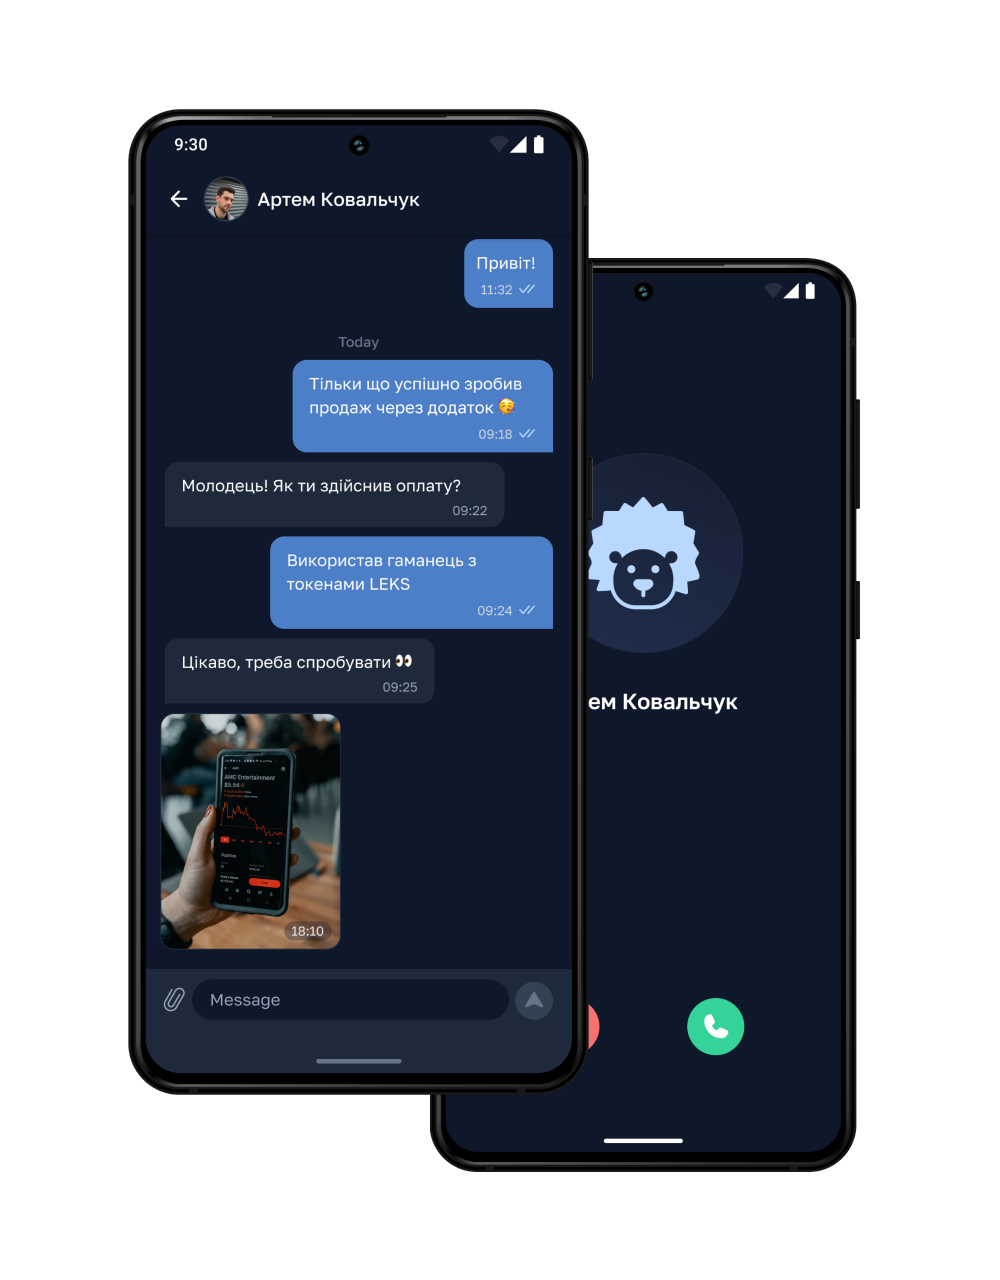 chat call screenshot (dark mode)